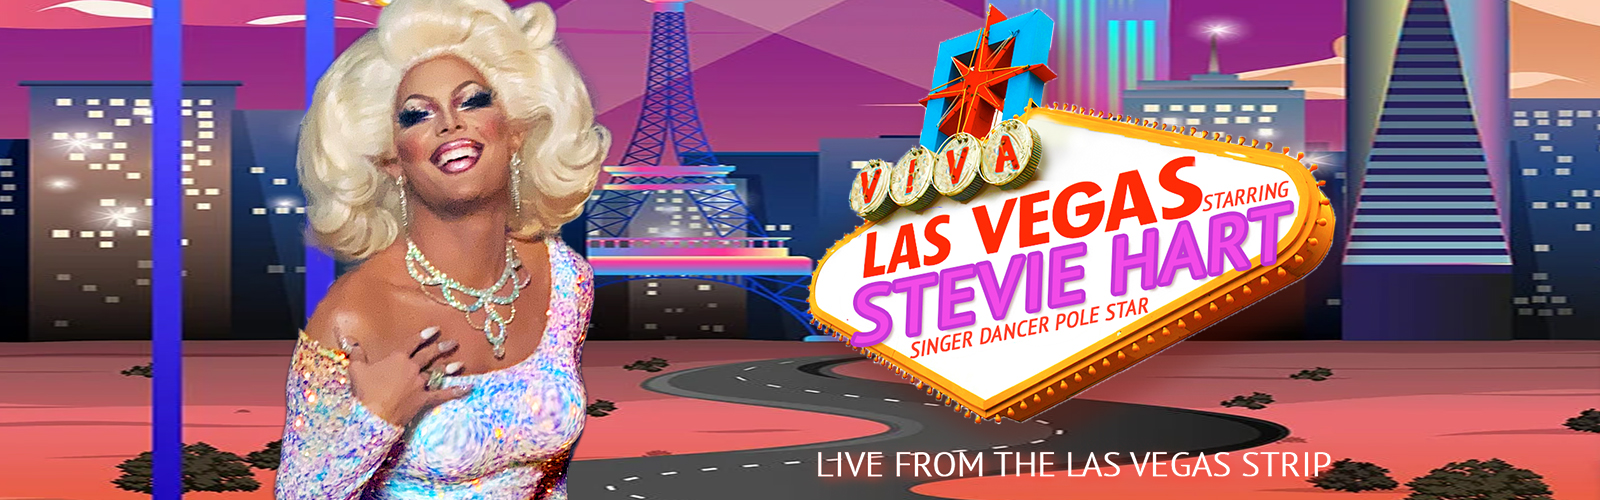 VIVA LAS VEGAS, starring Steven Retchless